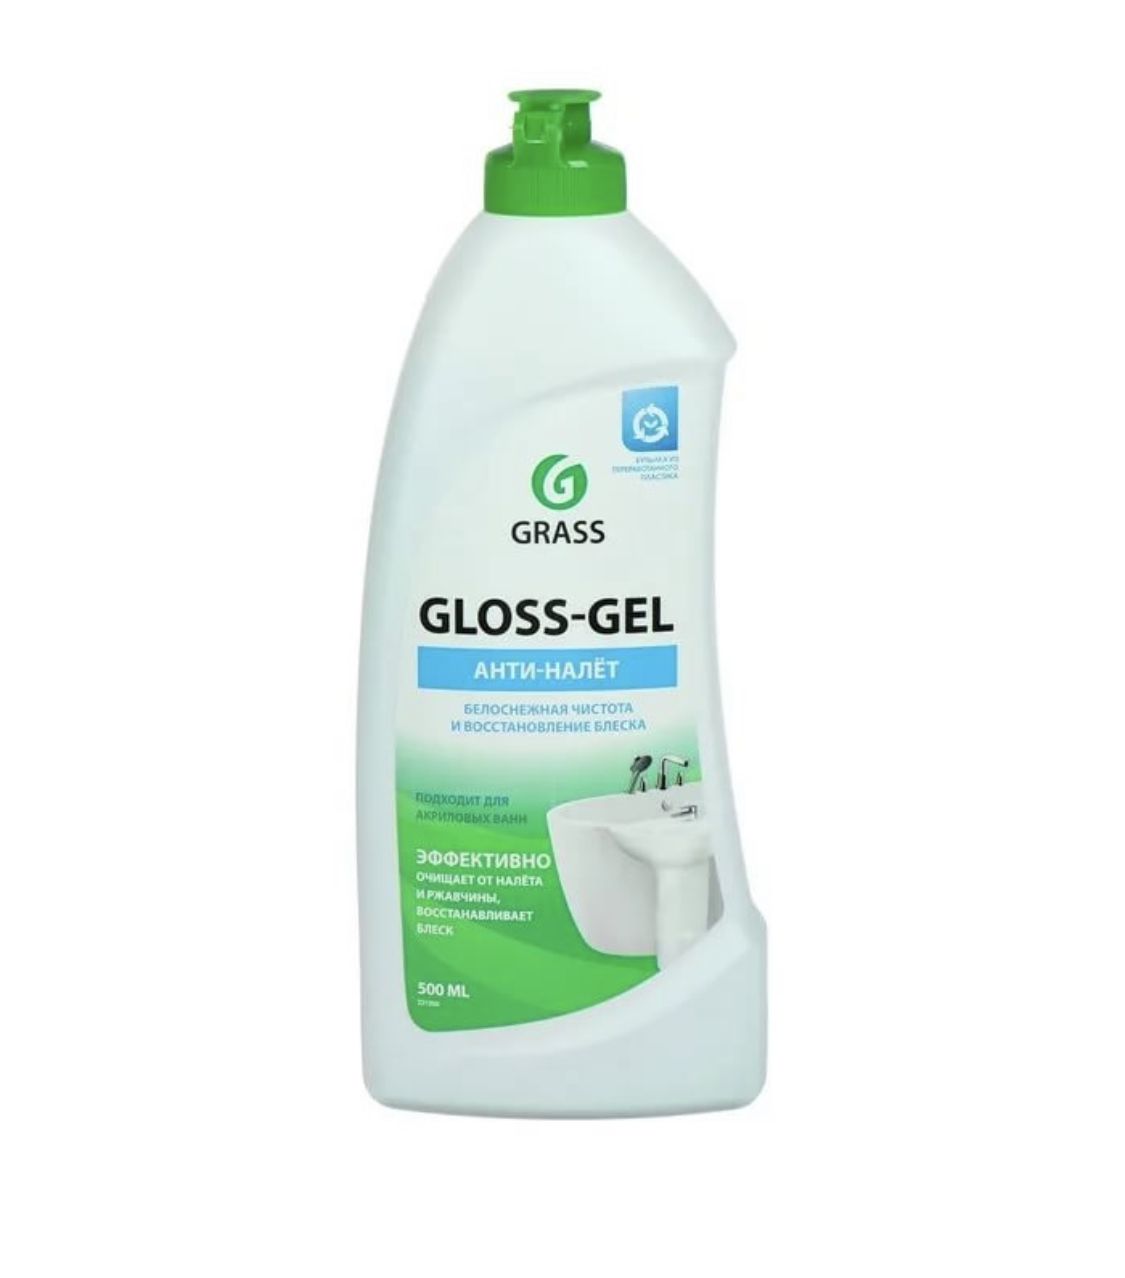 Чистящее средство Grass «Gloss-Gel» Анти-налет отзывы